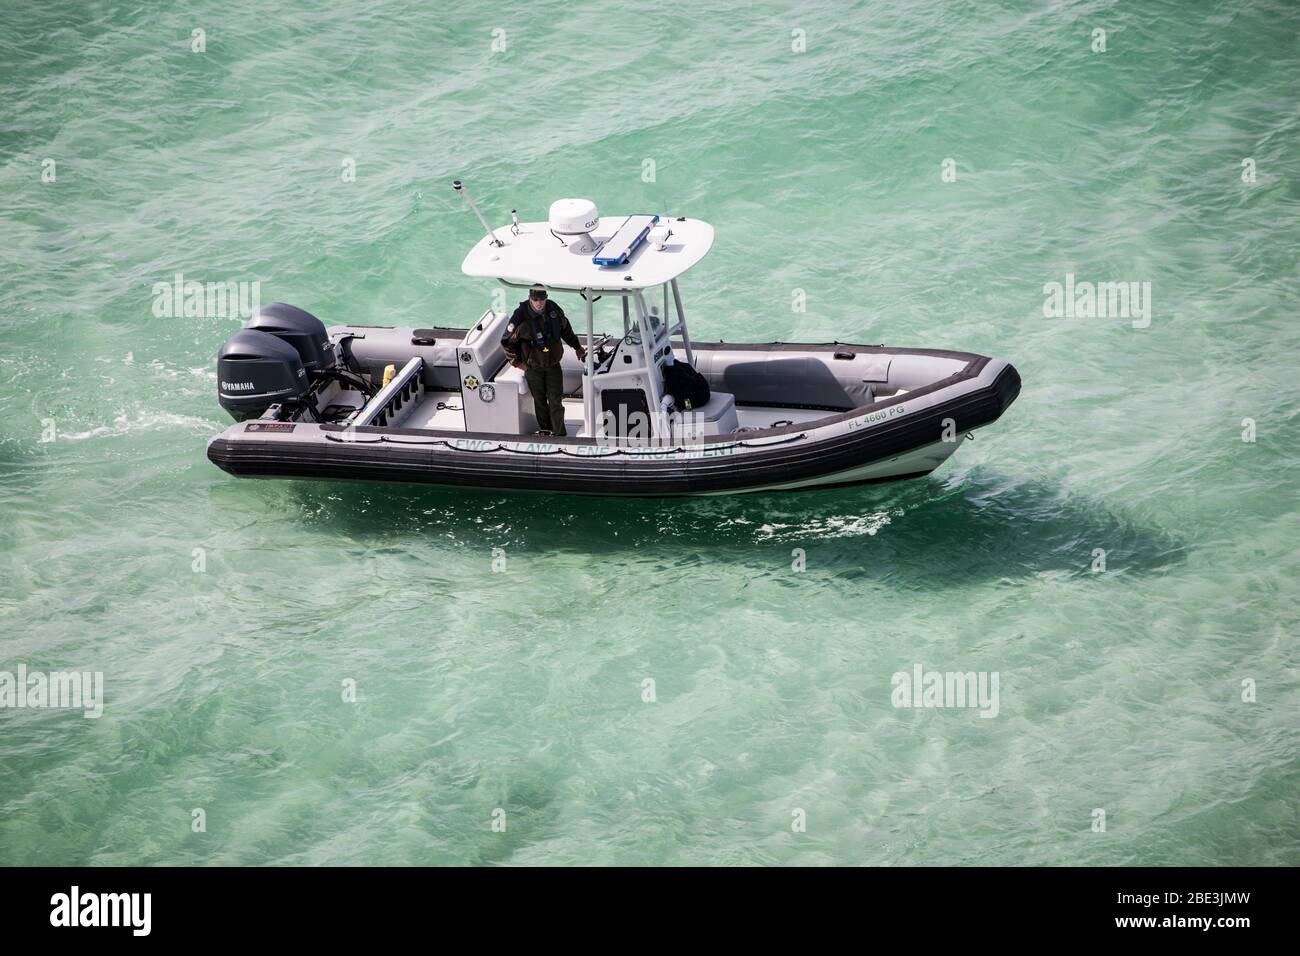 Un oficial de la Comisión de vida Silvestre de la Florida patrulla a lo largo de una playa cerrada durante la pandemia de COVID-19 Foto de stock